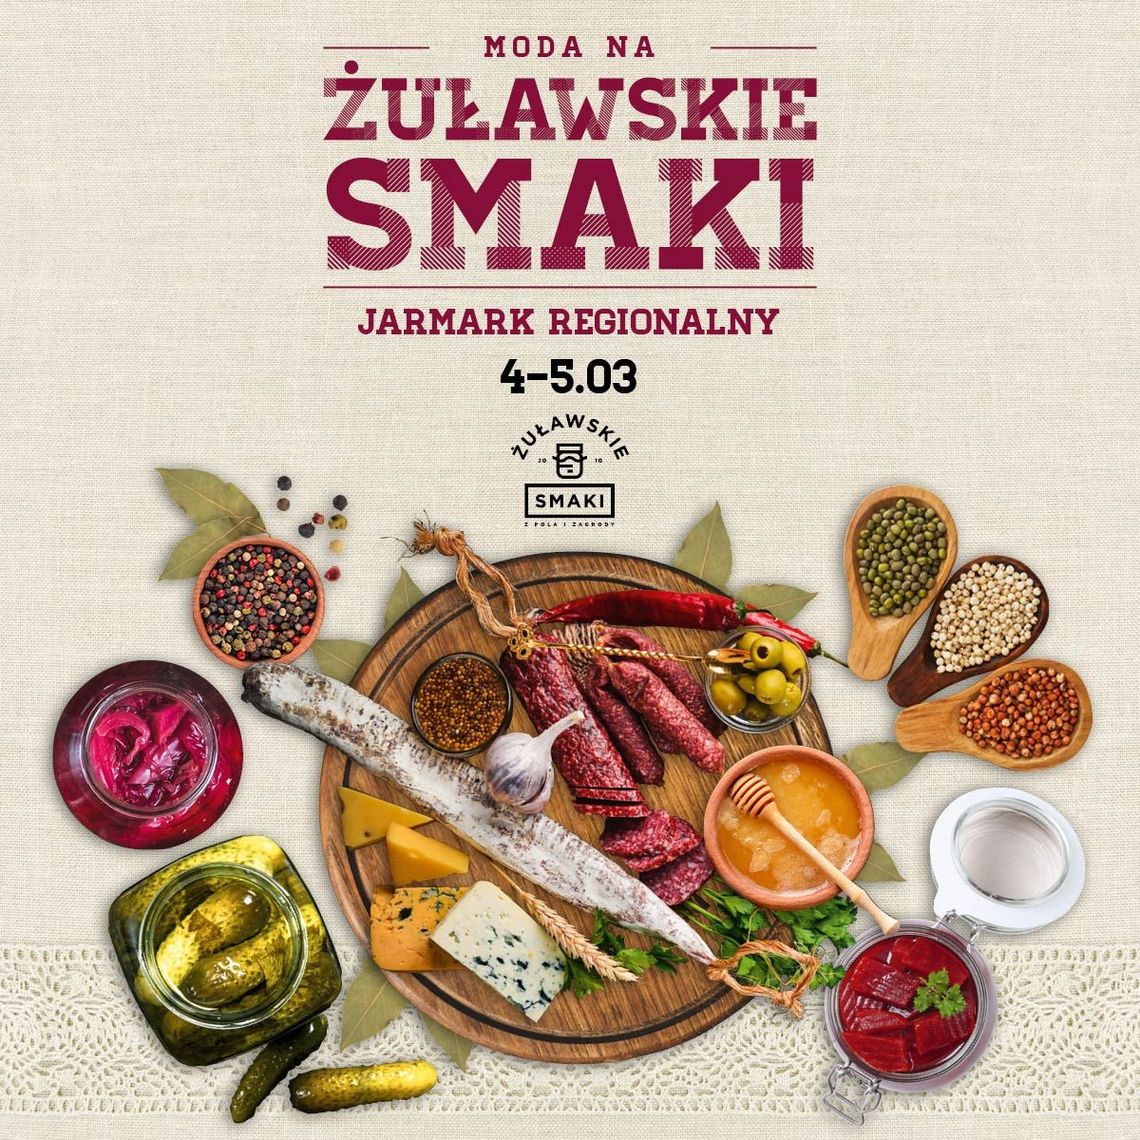 Jarmark "Żuławskie Smaki" – lokalna żywność w CH Osowa już w piątek i sobotę